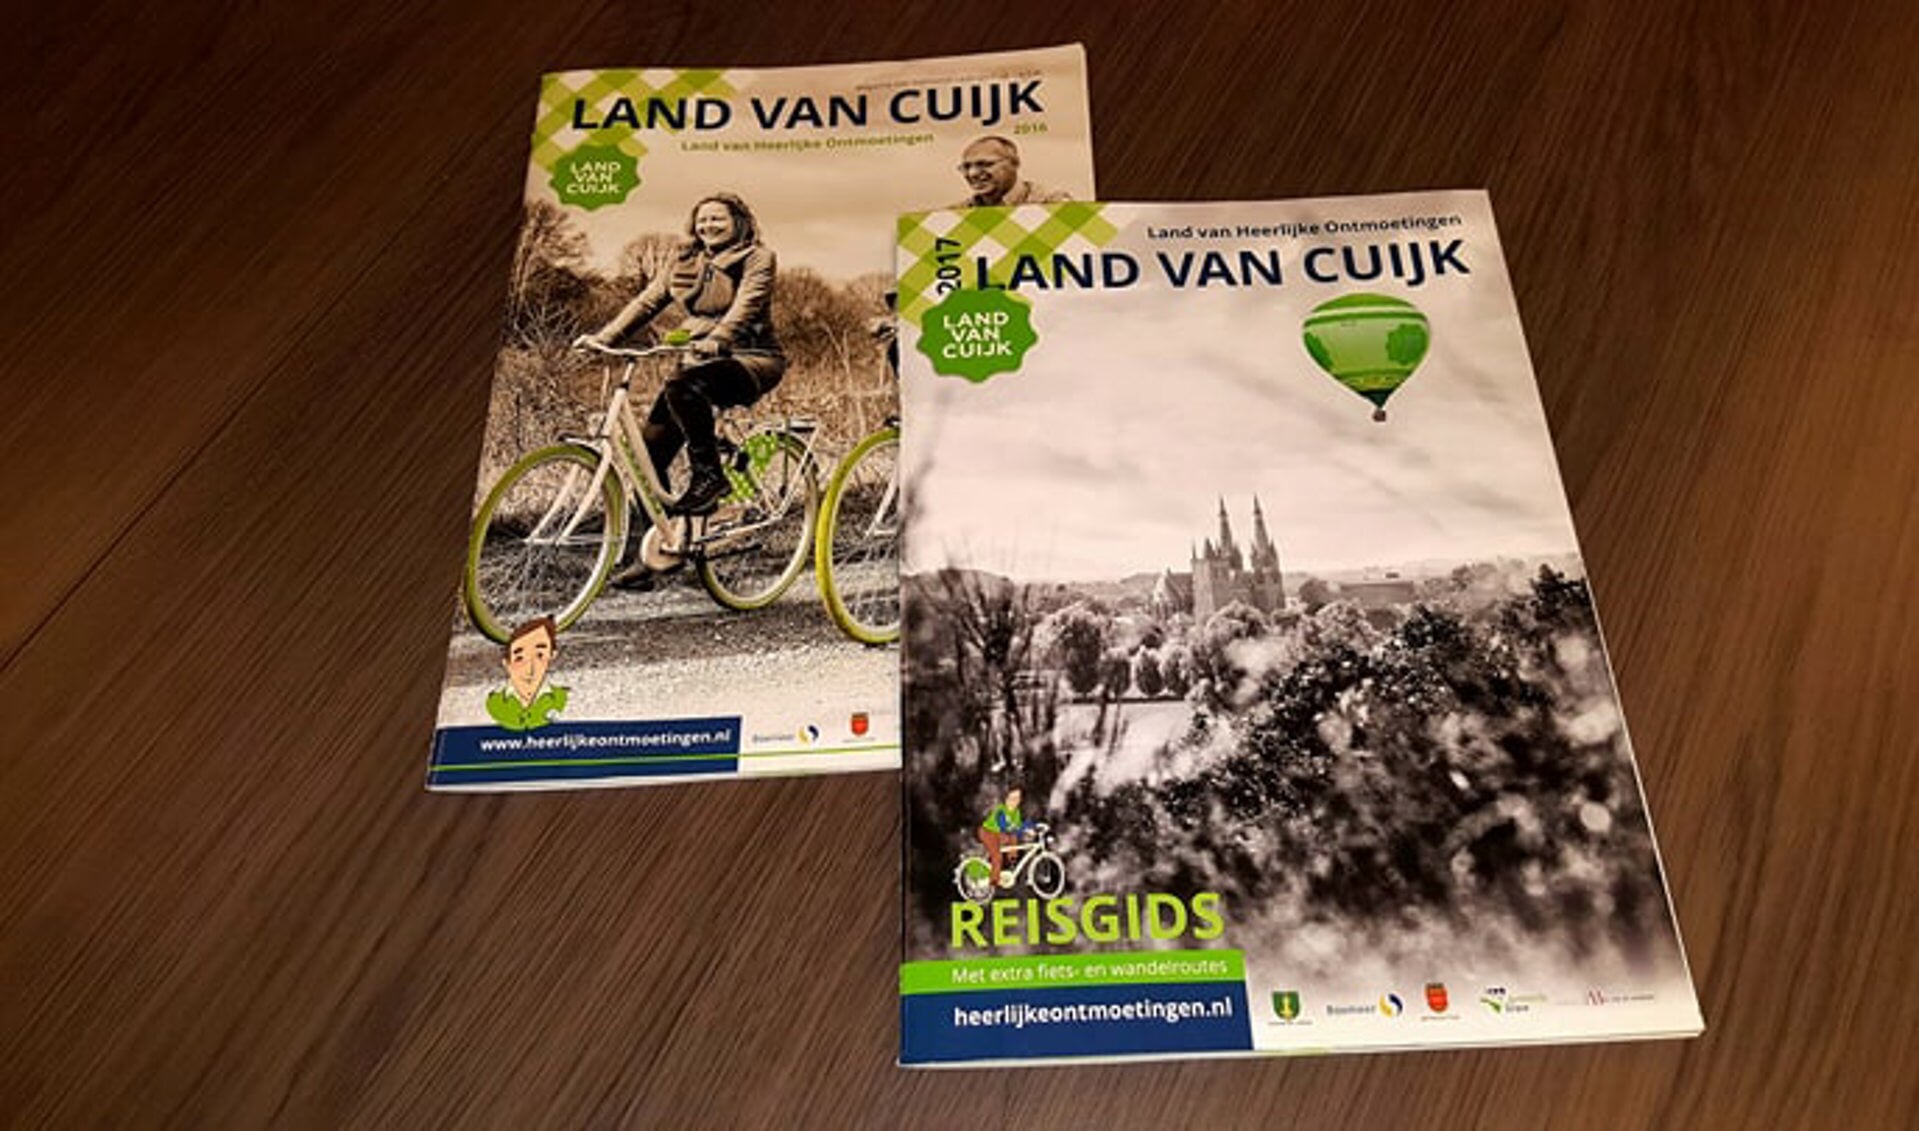 De nieuwe reisgids van Land van Cuijk verschijnt naar verwachting in het voorjaar. 